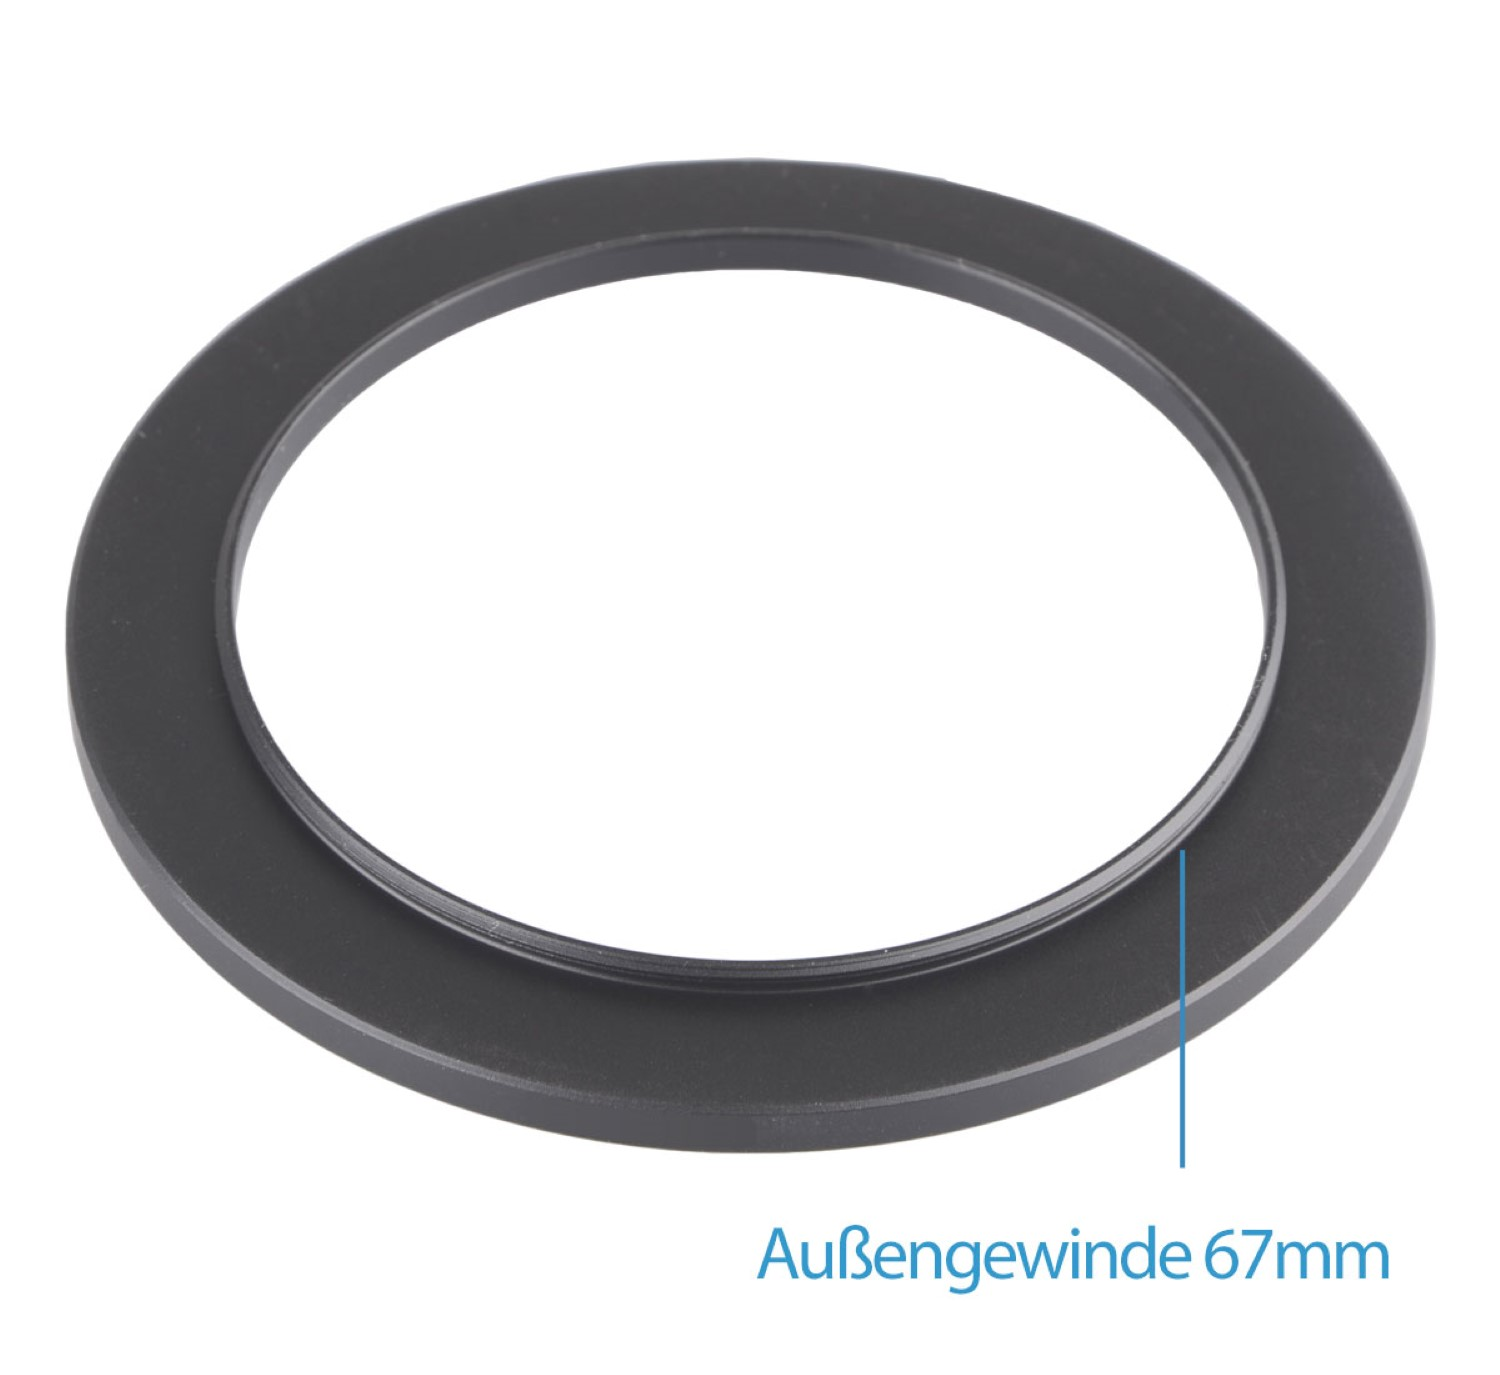 Black, Filtergewinde passend Adapter, mit Step-Up Ring, AYEX Objektive für